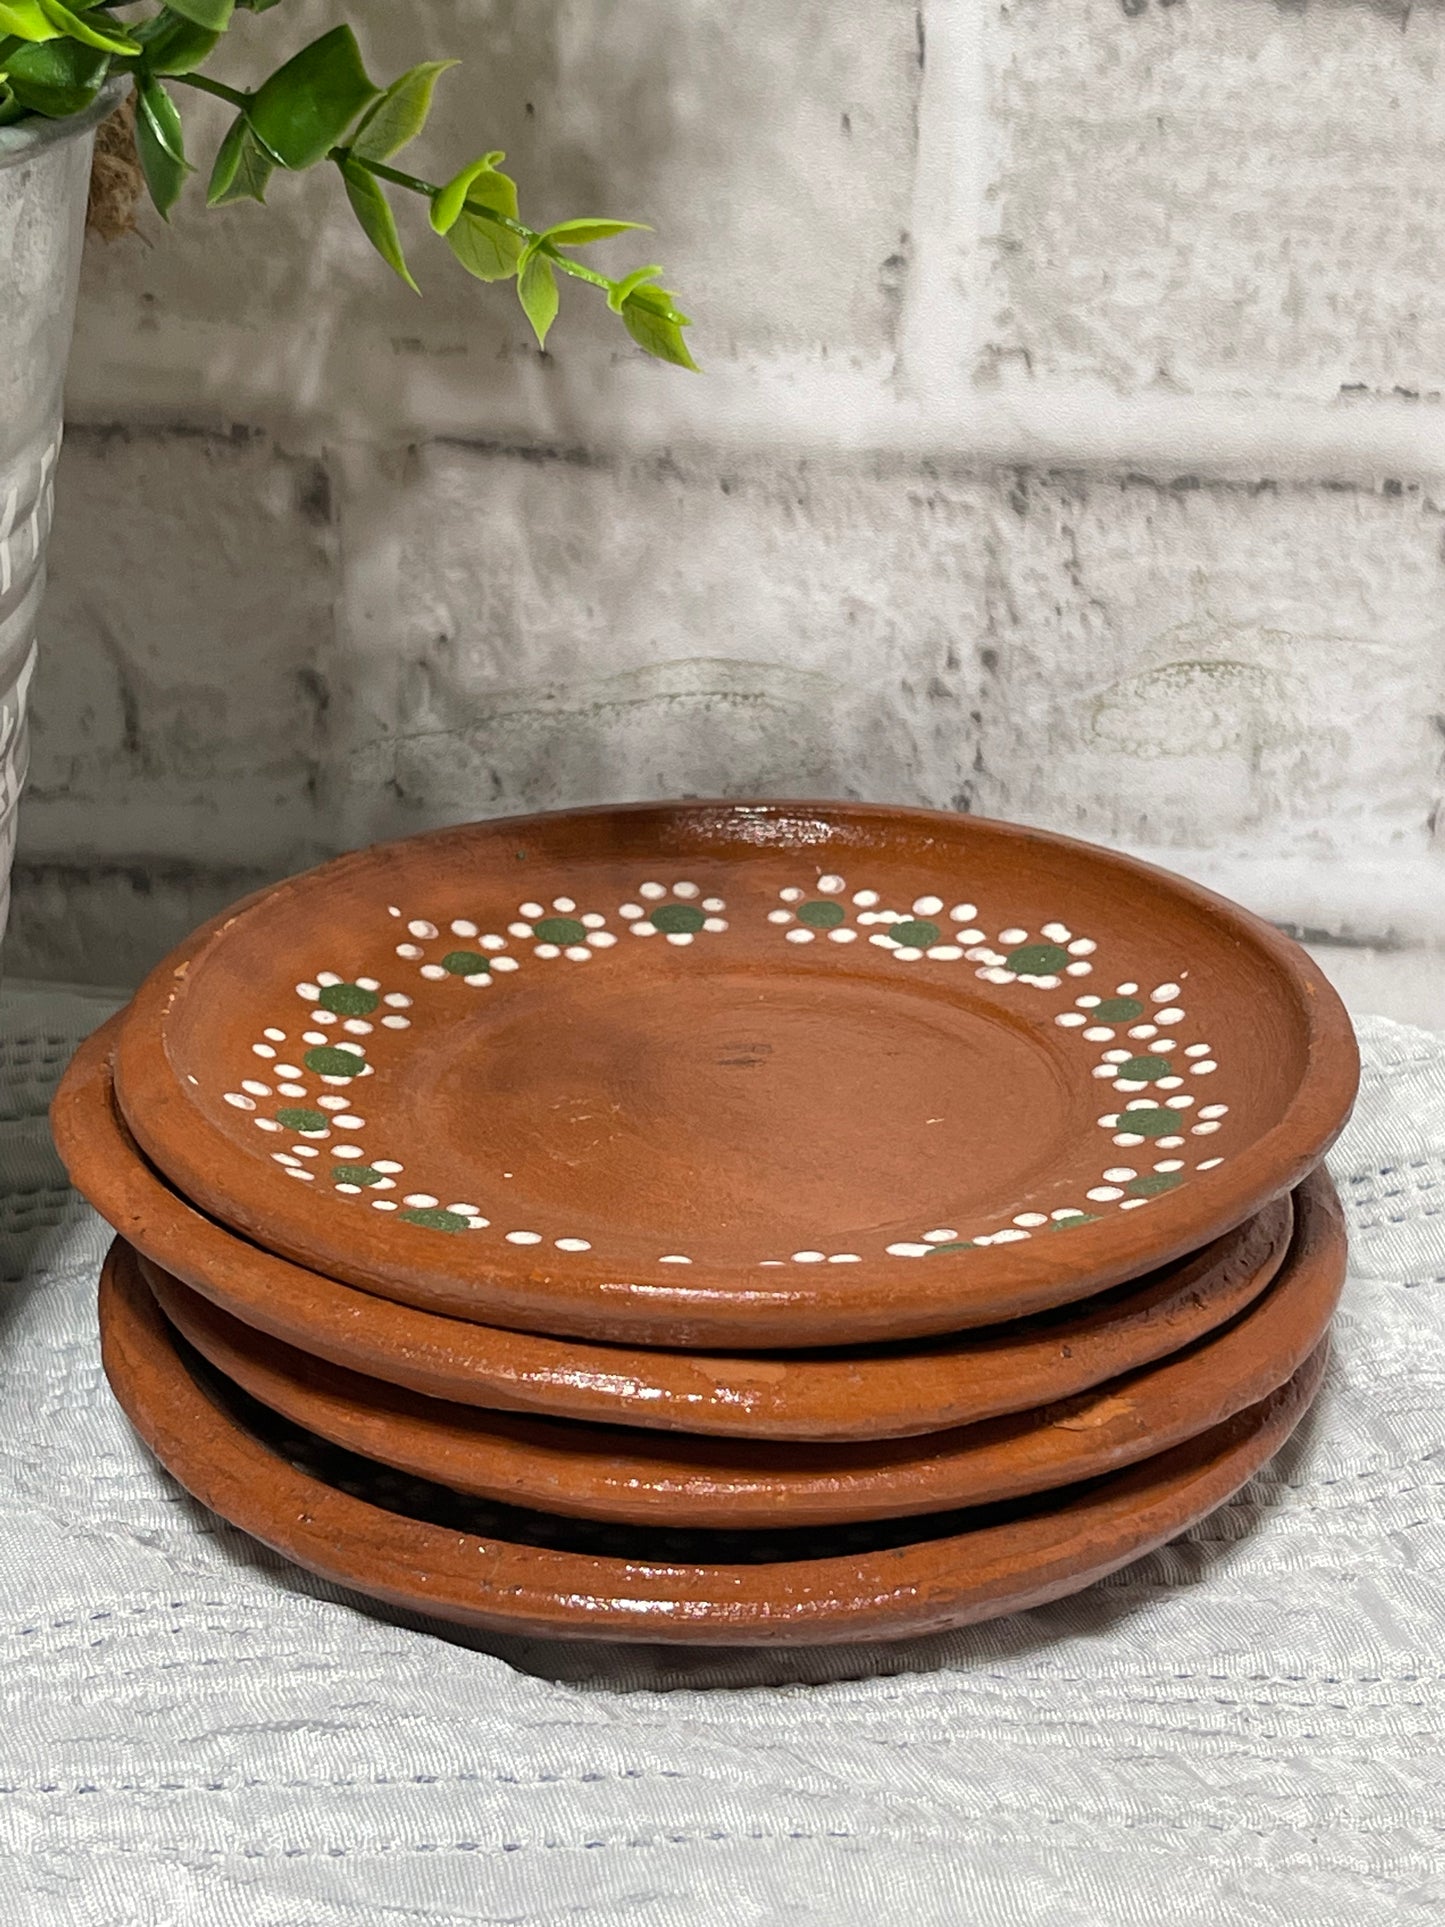 Regalito cafetero mexican handmade mug and plate /jarrito cafetero clásico y plato de barro